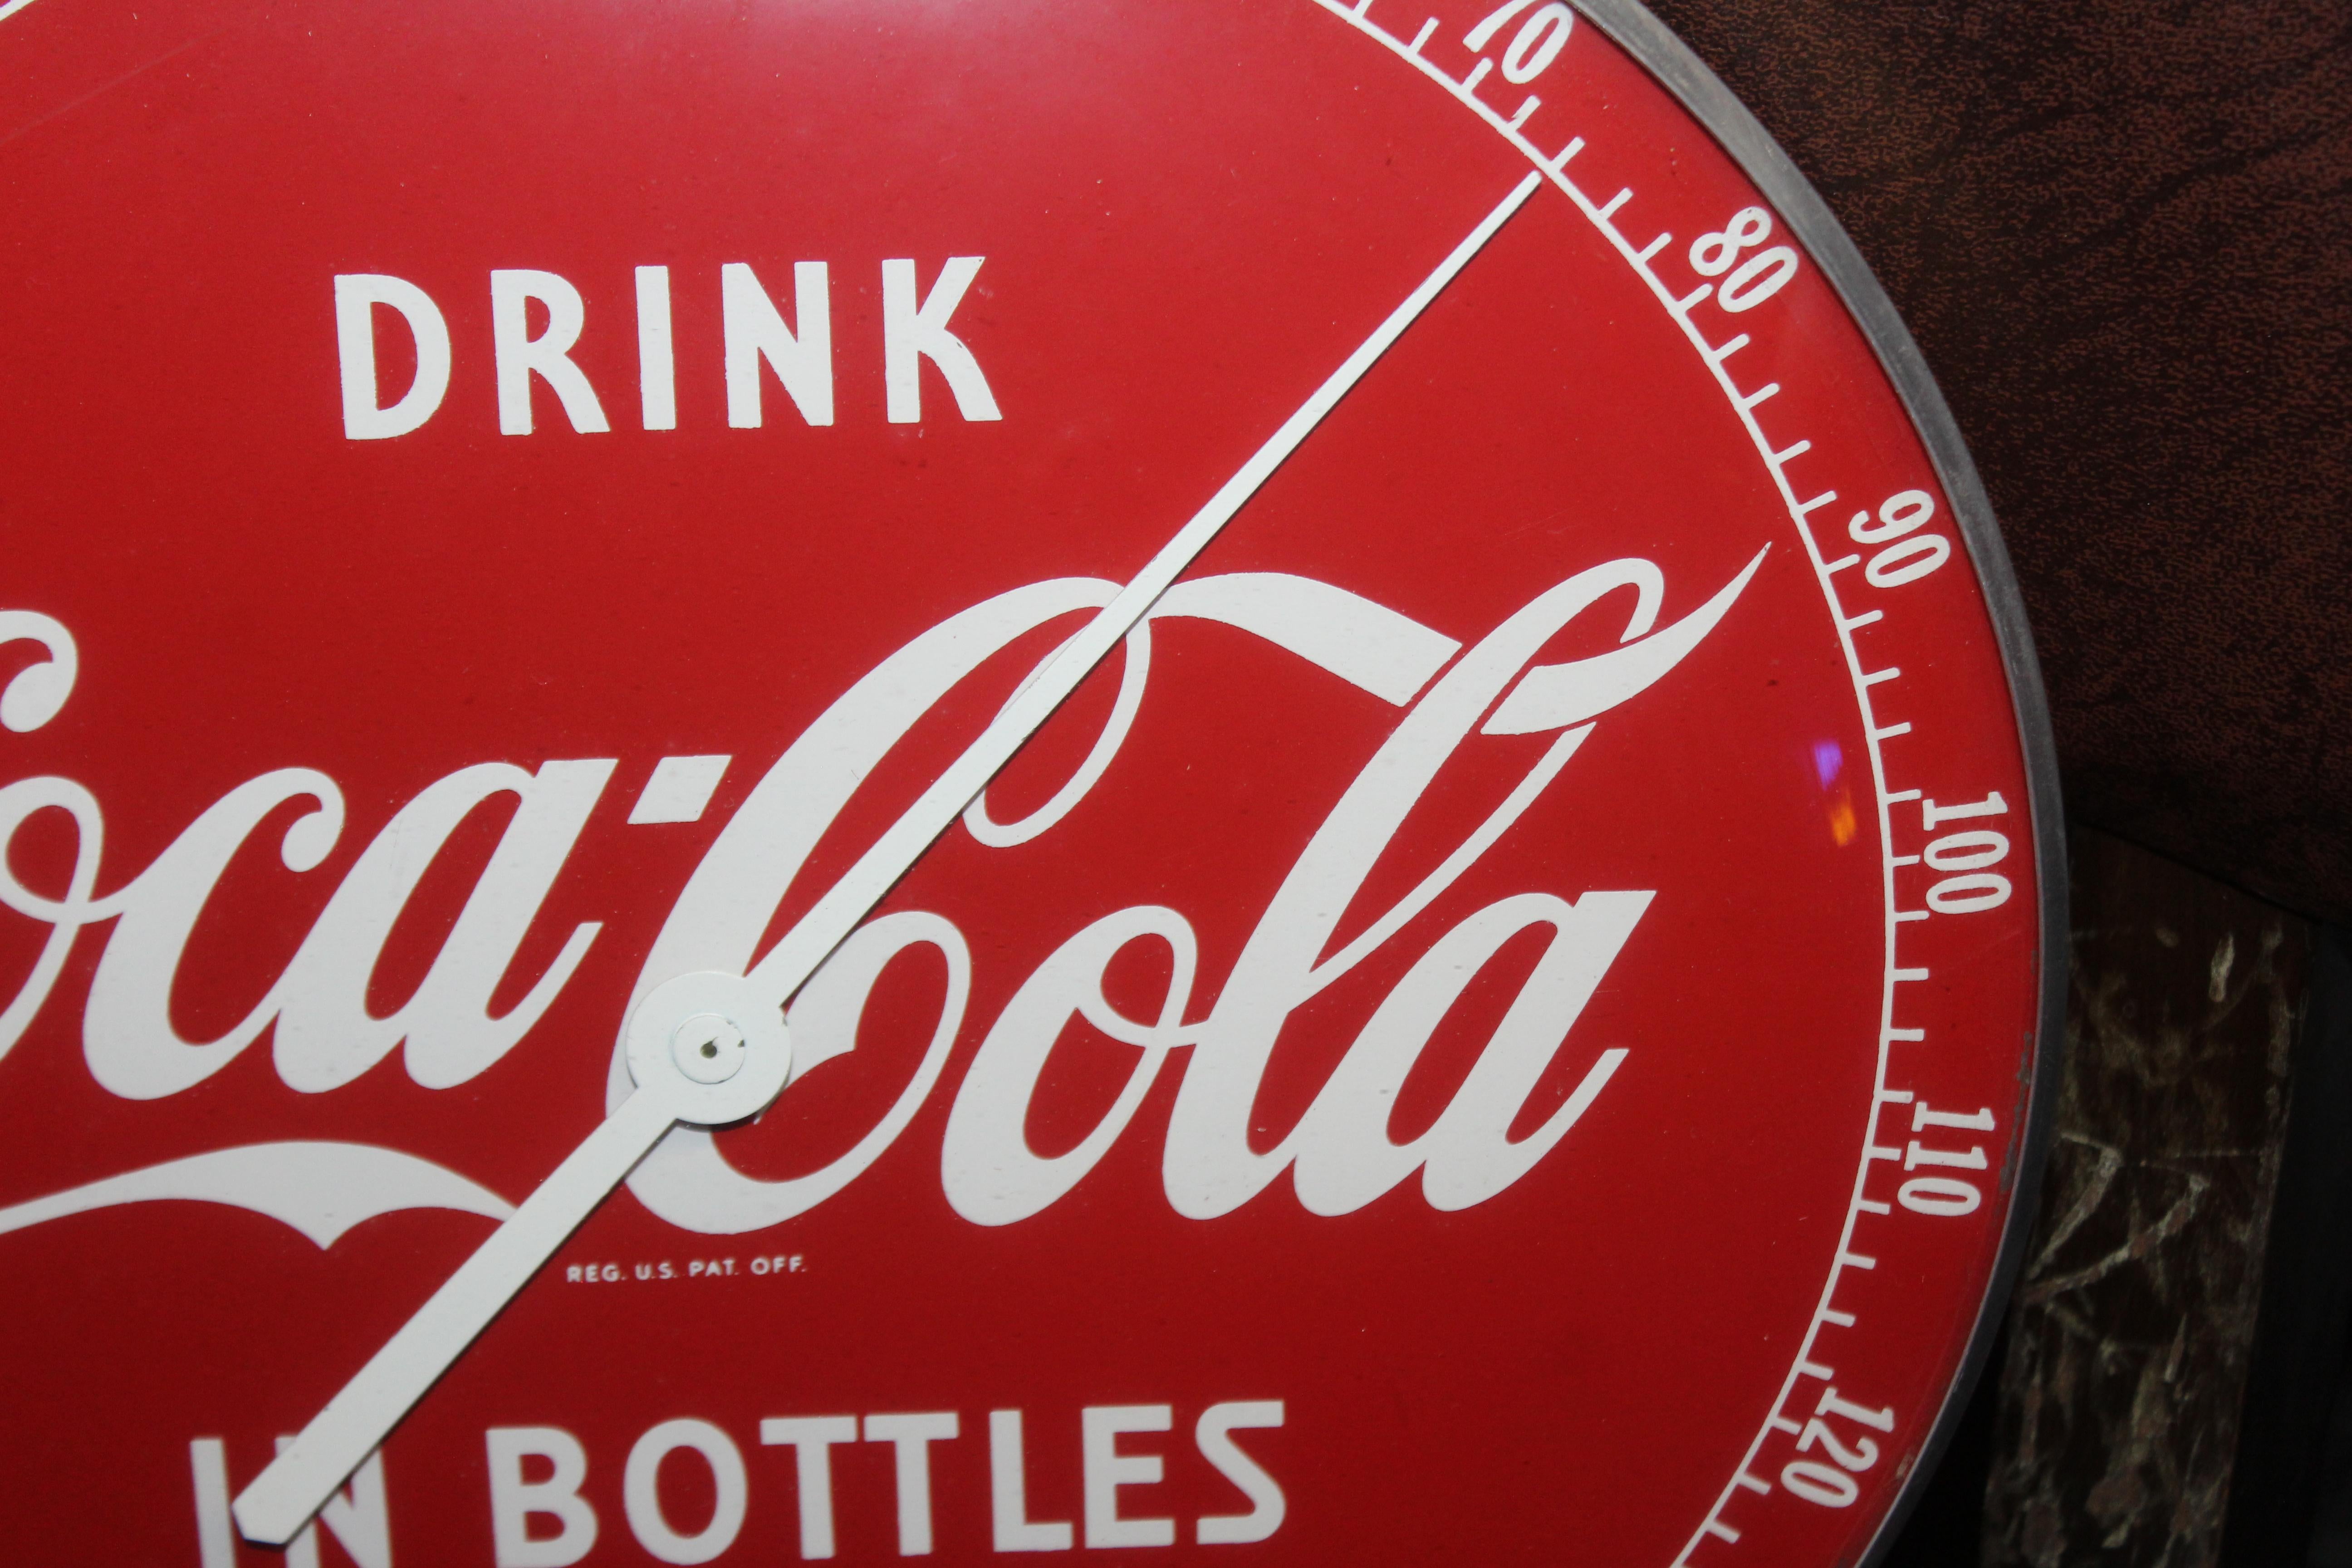 drink coca cola in bottles sign